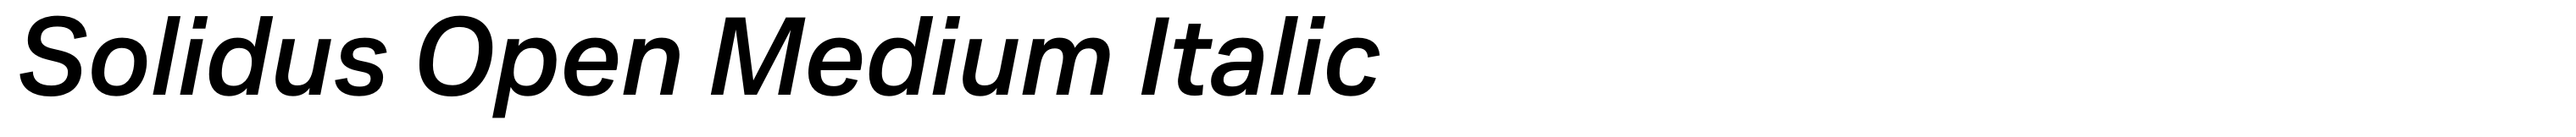 Solidus Open Medium Italic